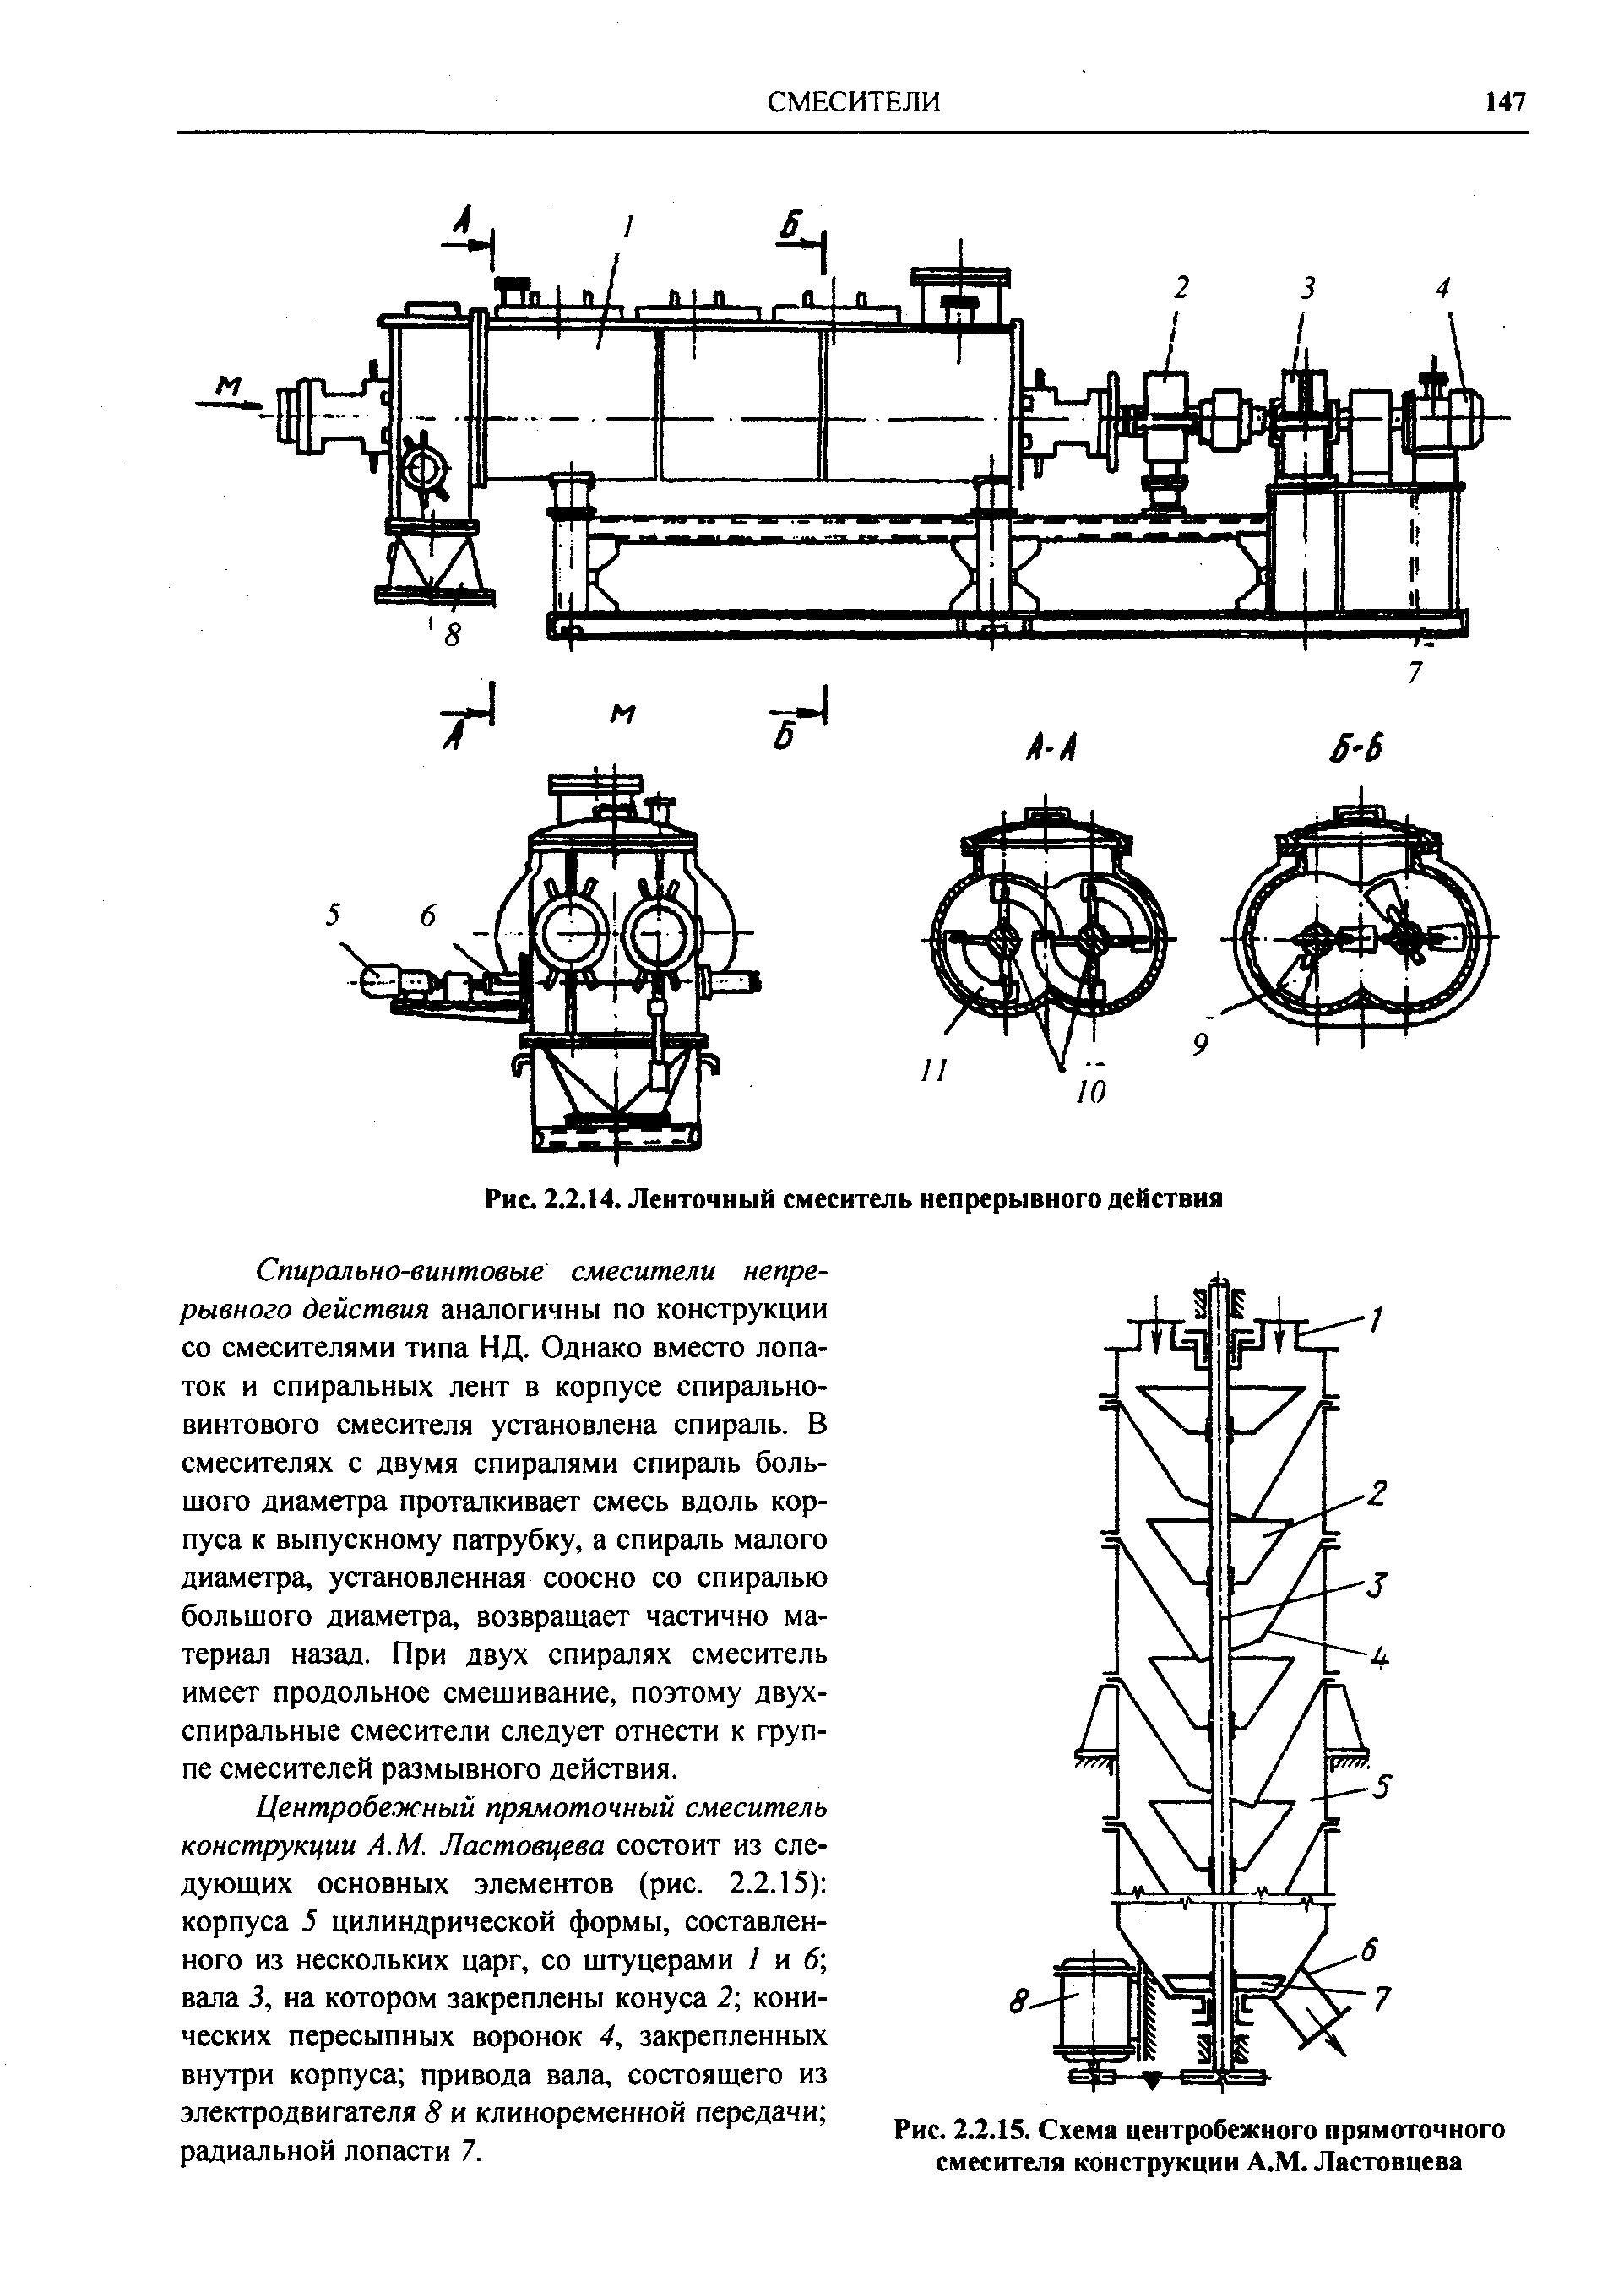 Рис. 2.2.15. Схема центробежного прямоточного смесителя конструкции А.М. Ластовцева
